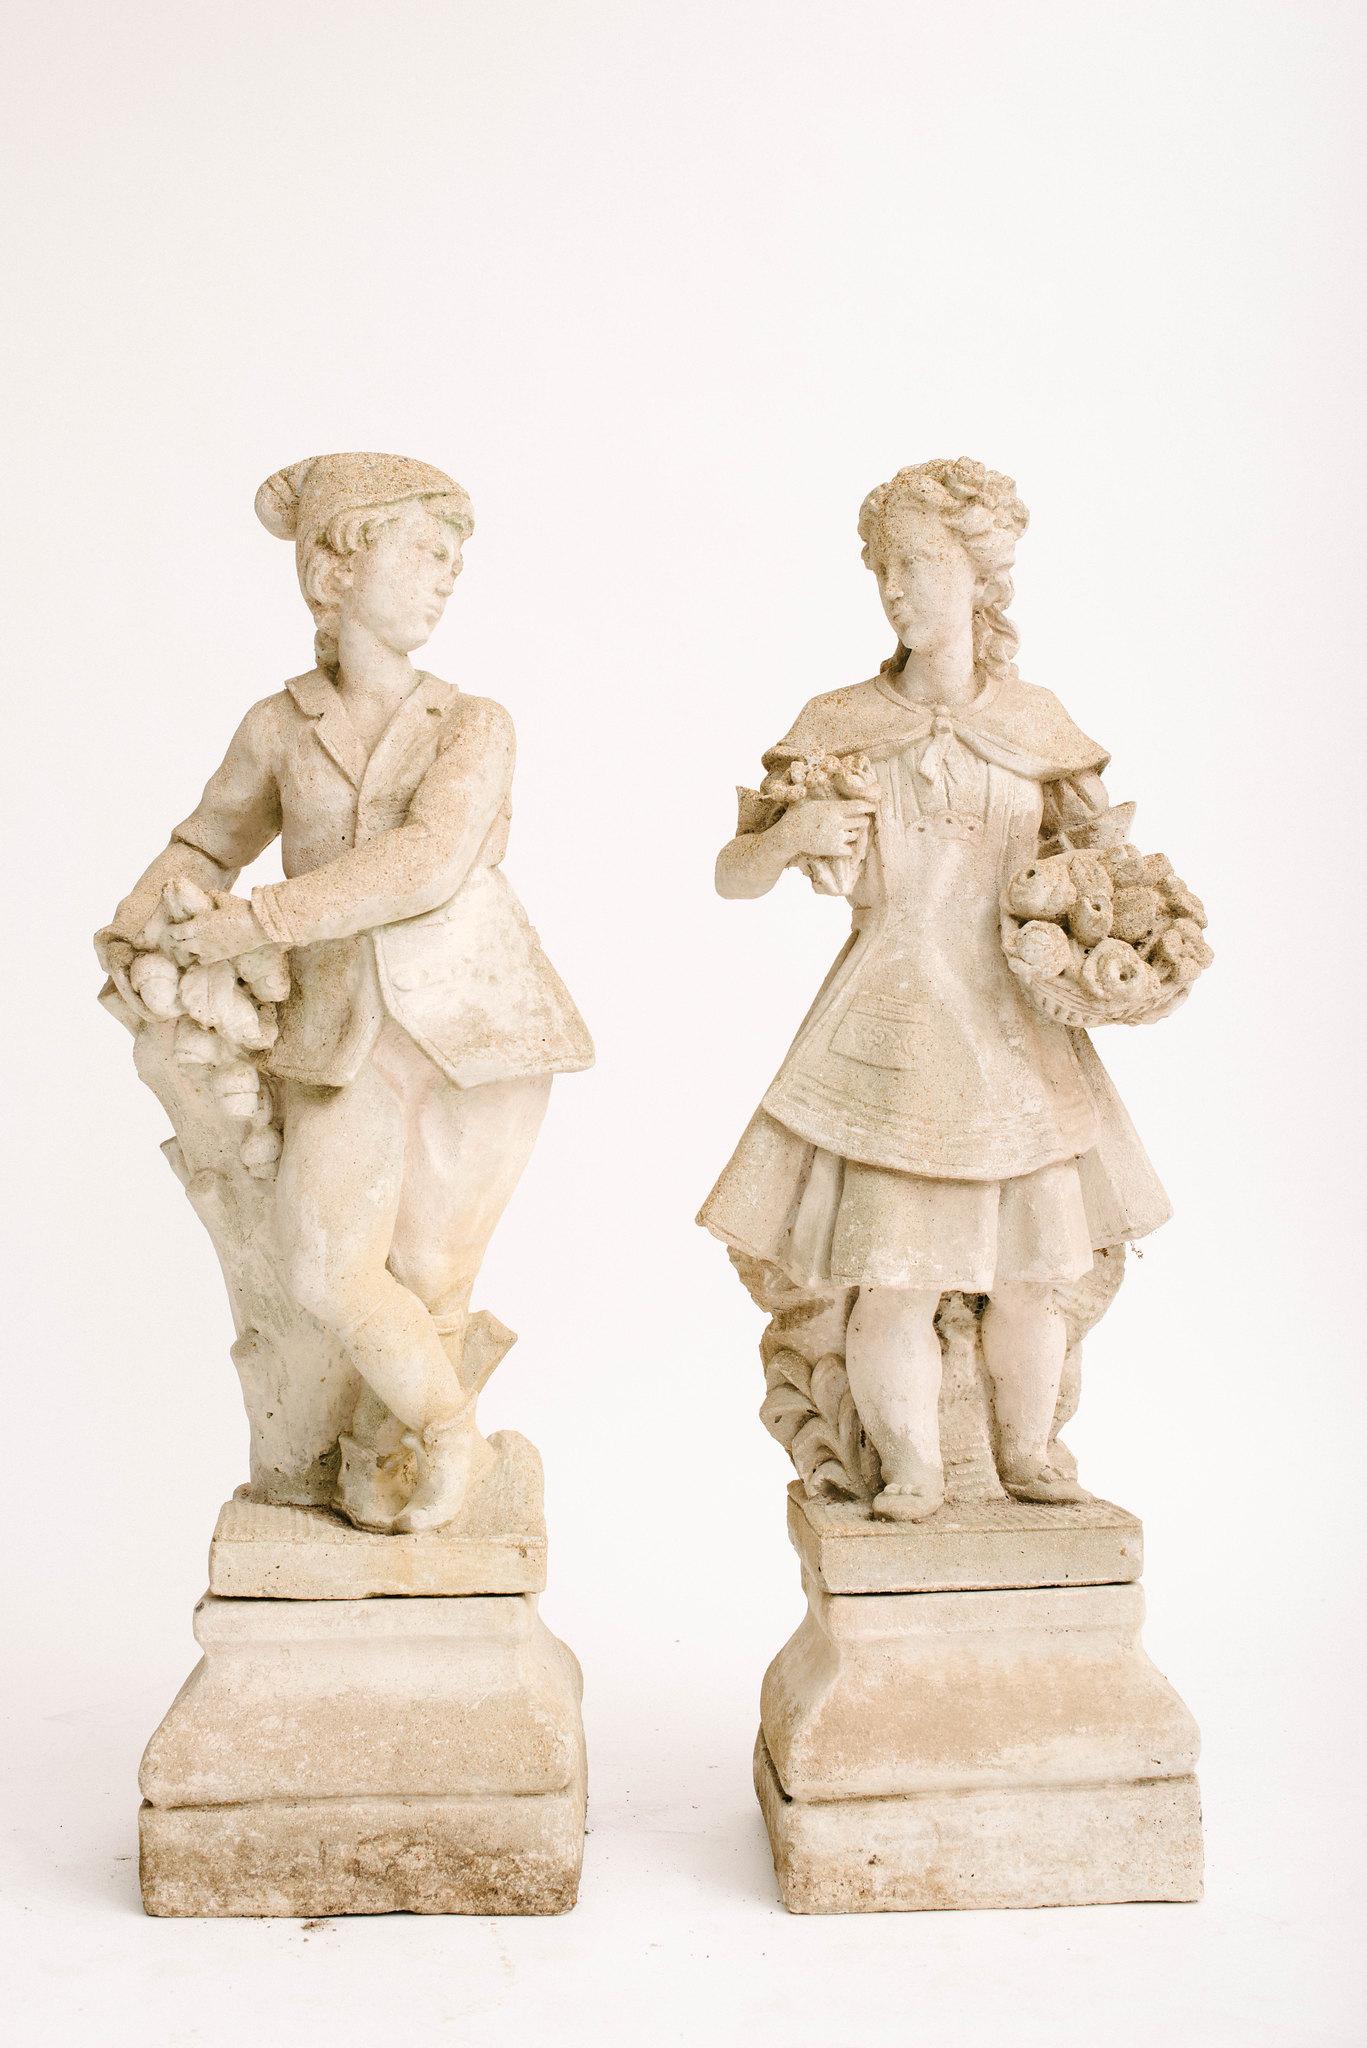 Une belle paire de figurines de jardin en béton du 20e siècle provenant de France. Il est perché à côté d'une souche de chêne, feuillage et glands à la main. Elle porte deux bouquets de fleurs. Ces personnages sont tous deux assis sur deux socles